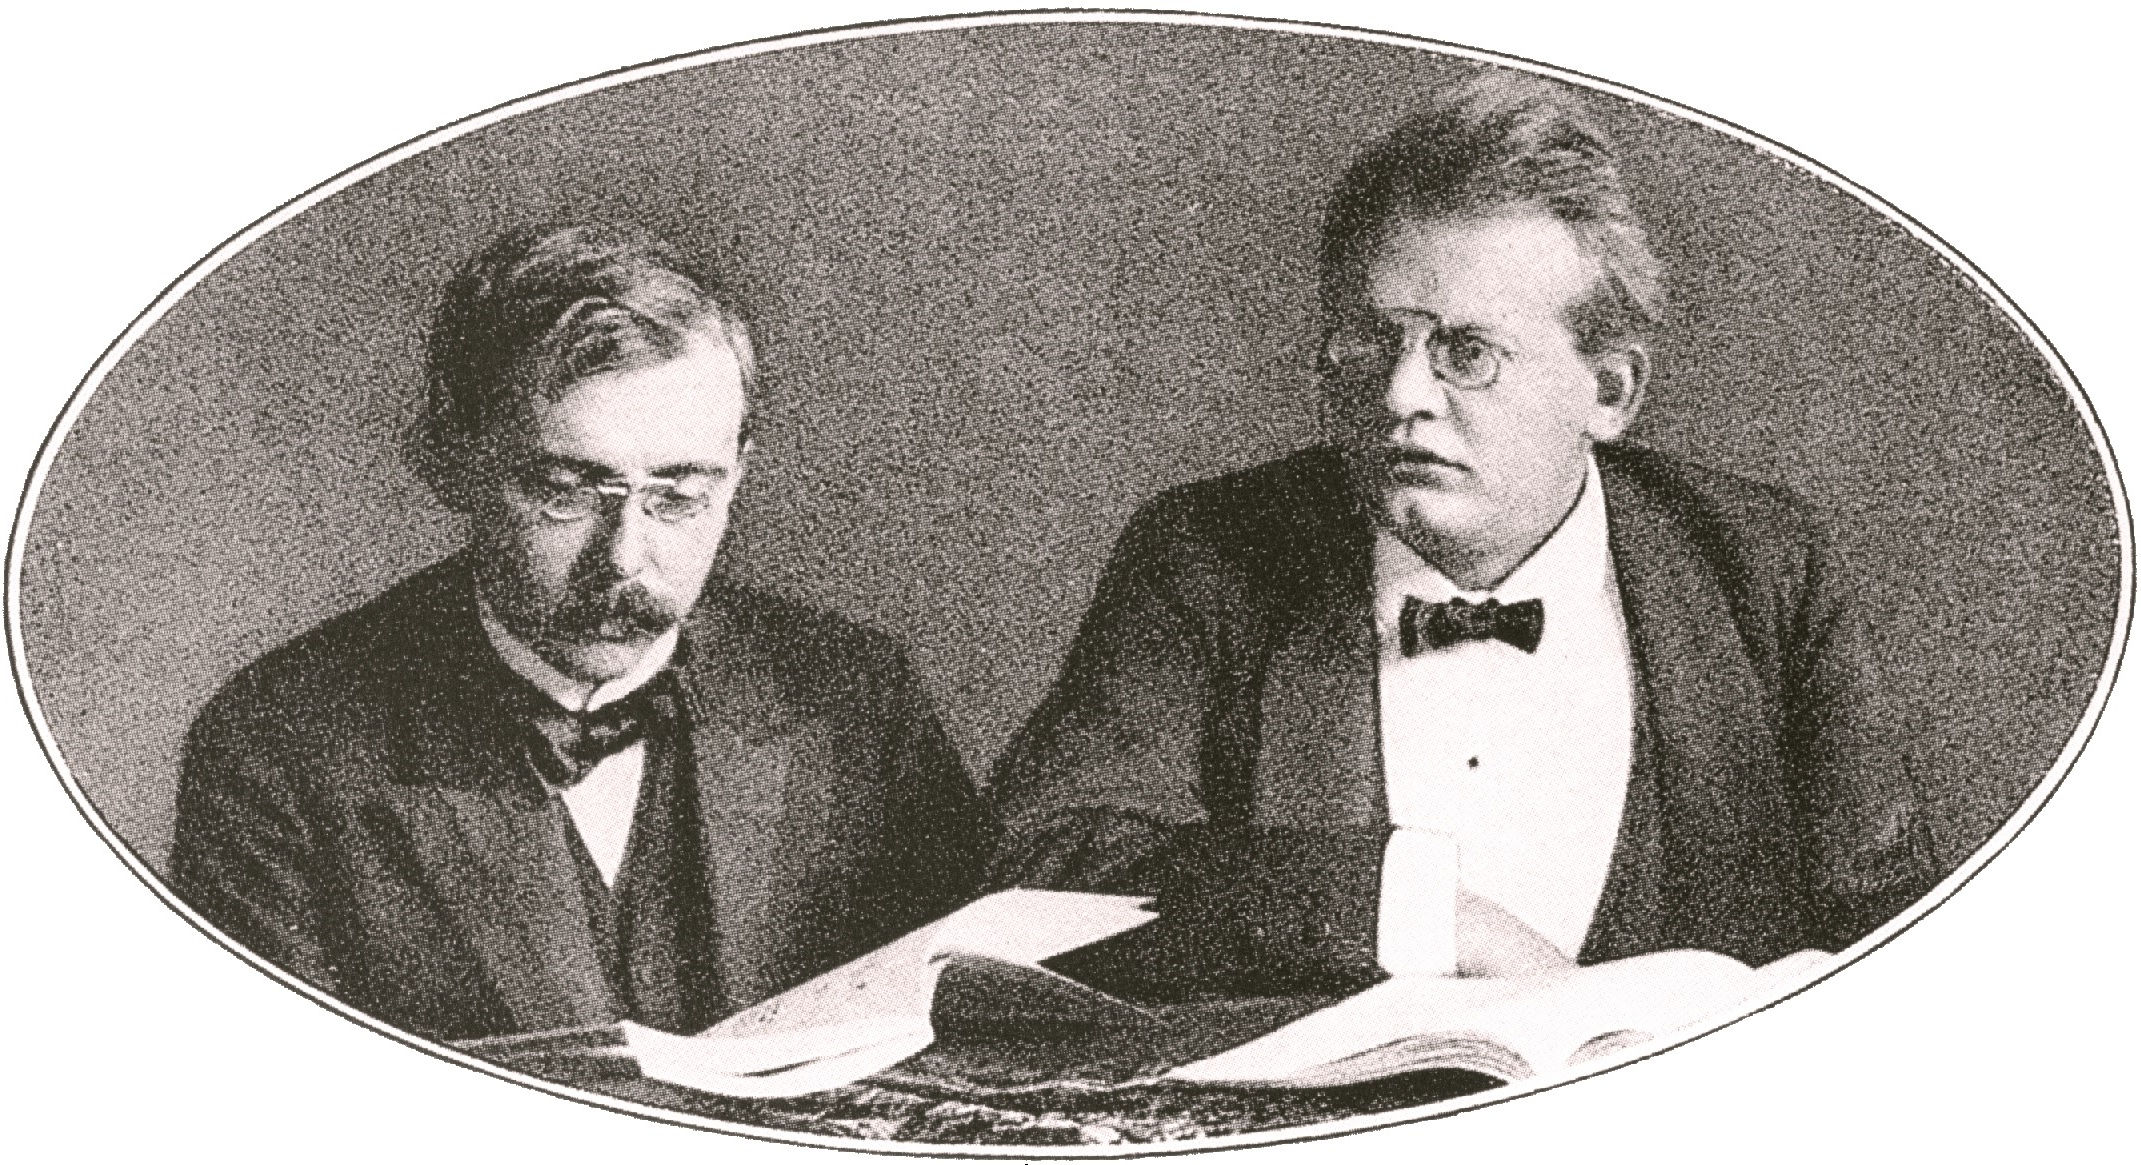 Der Ausschnitt einer Schwarzweiß-Fotografie von 1905 zeigt Max Reger und Karl Straube.